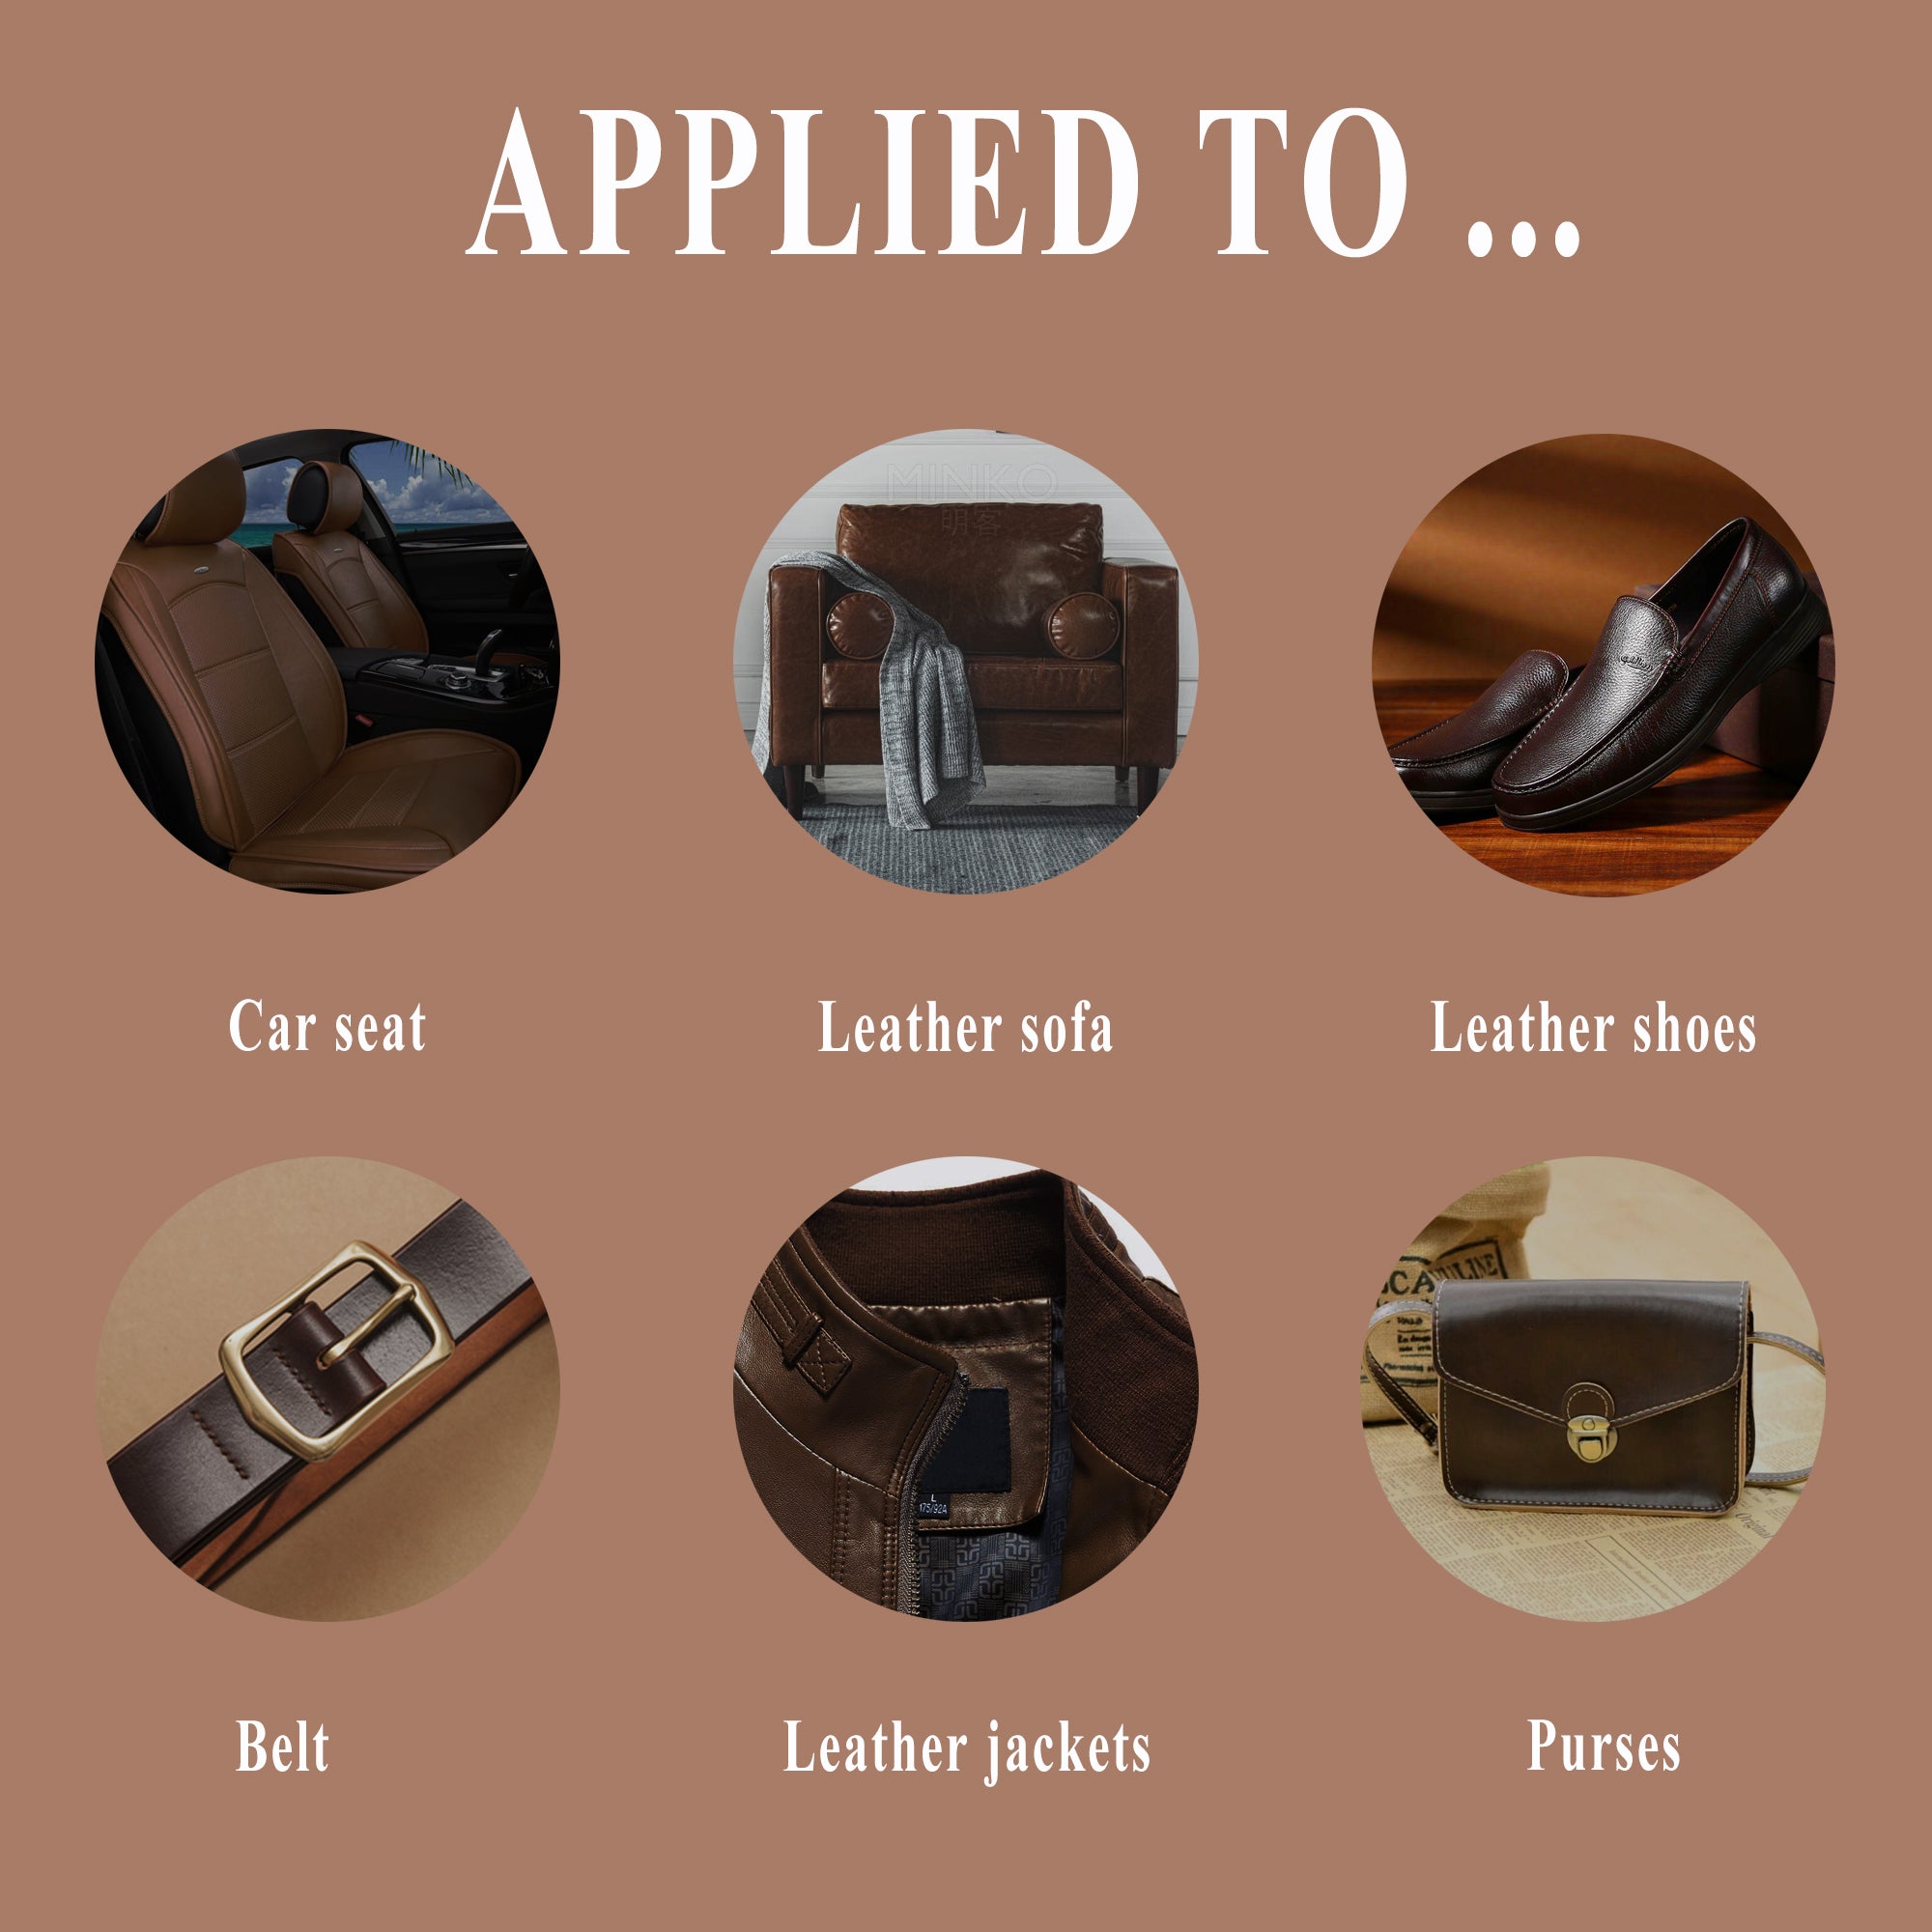 Endhokn Dark brown Leather, Vinyl Recoloring Repair Kit - Car Seats, S